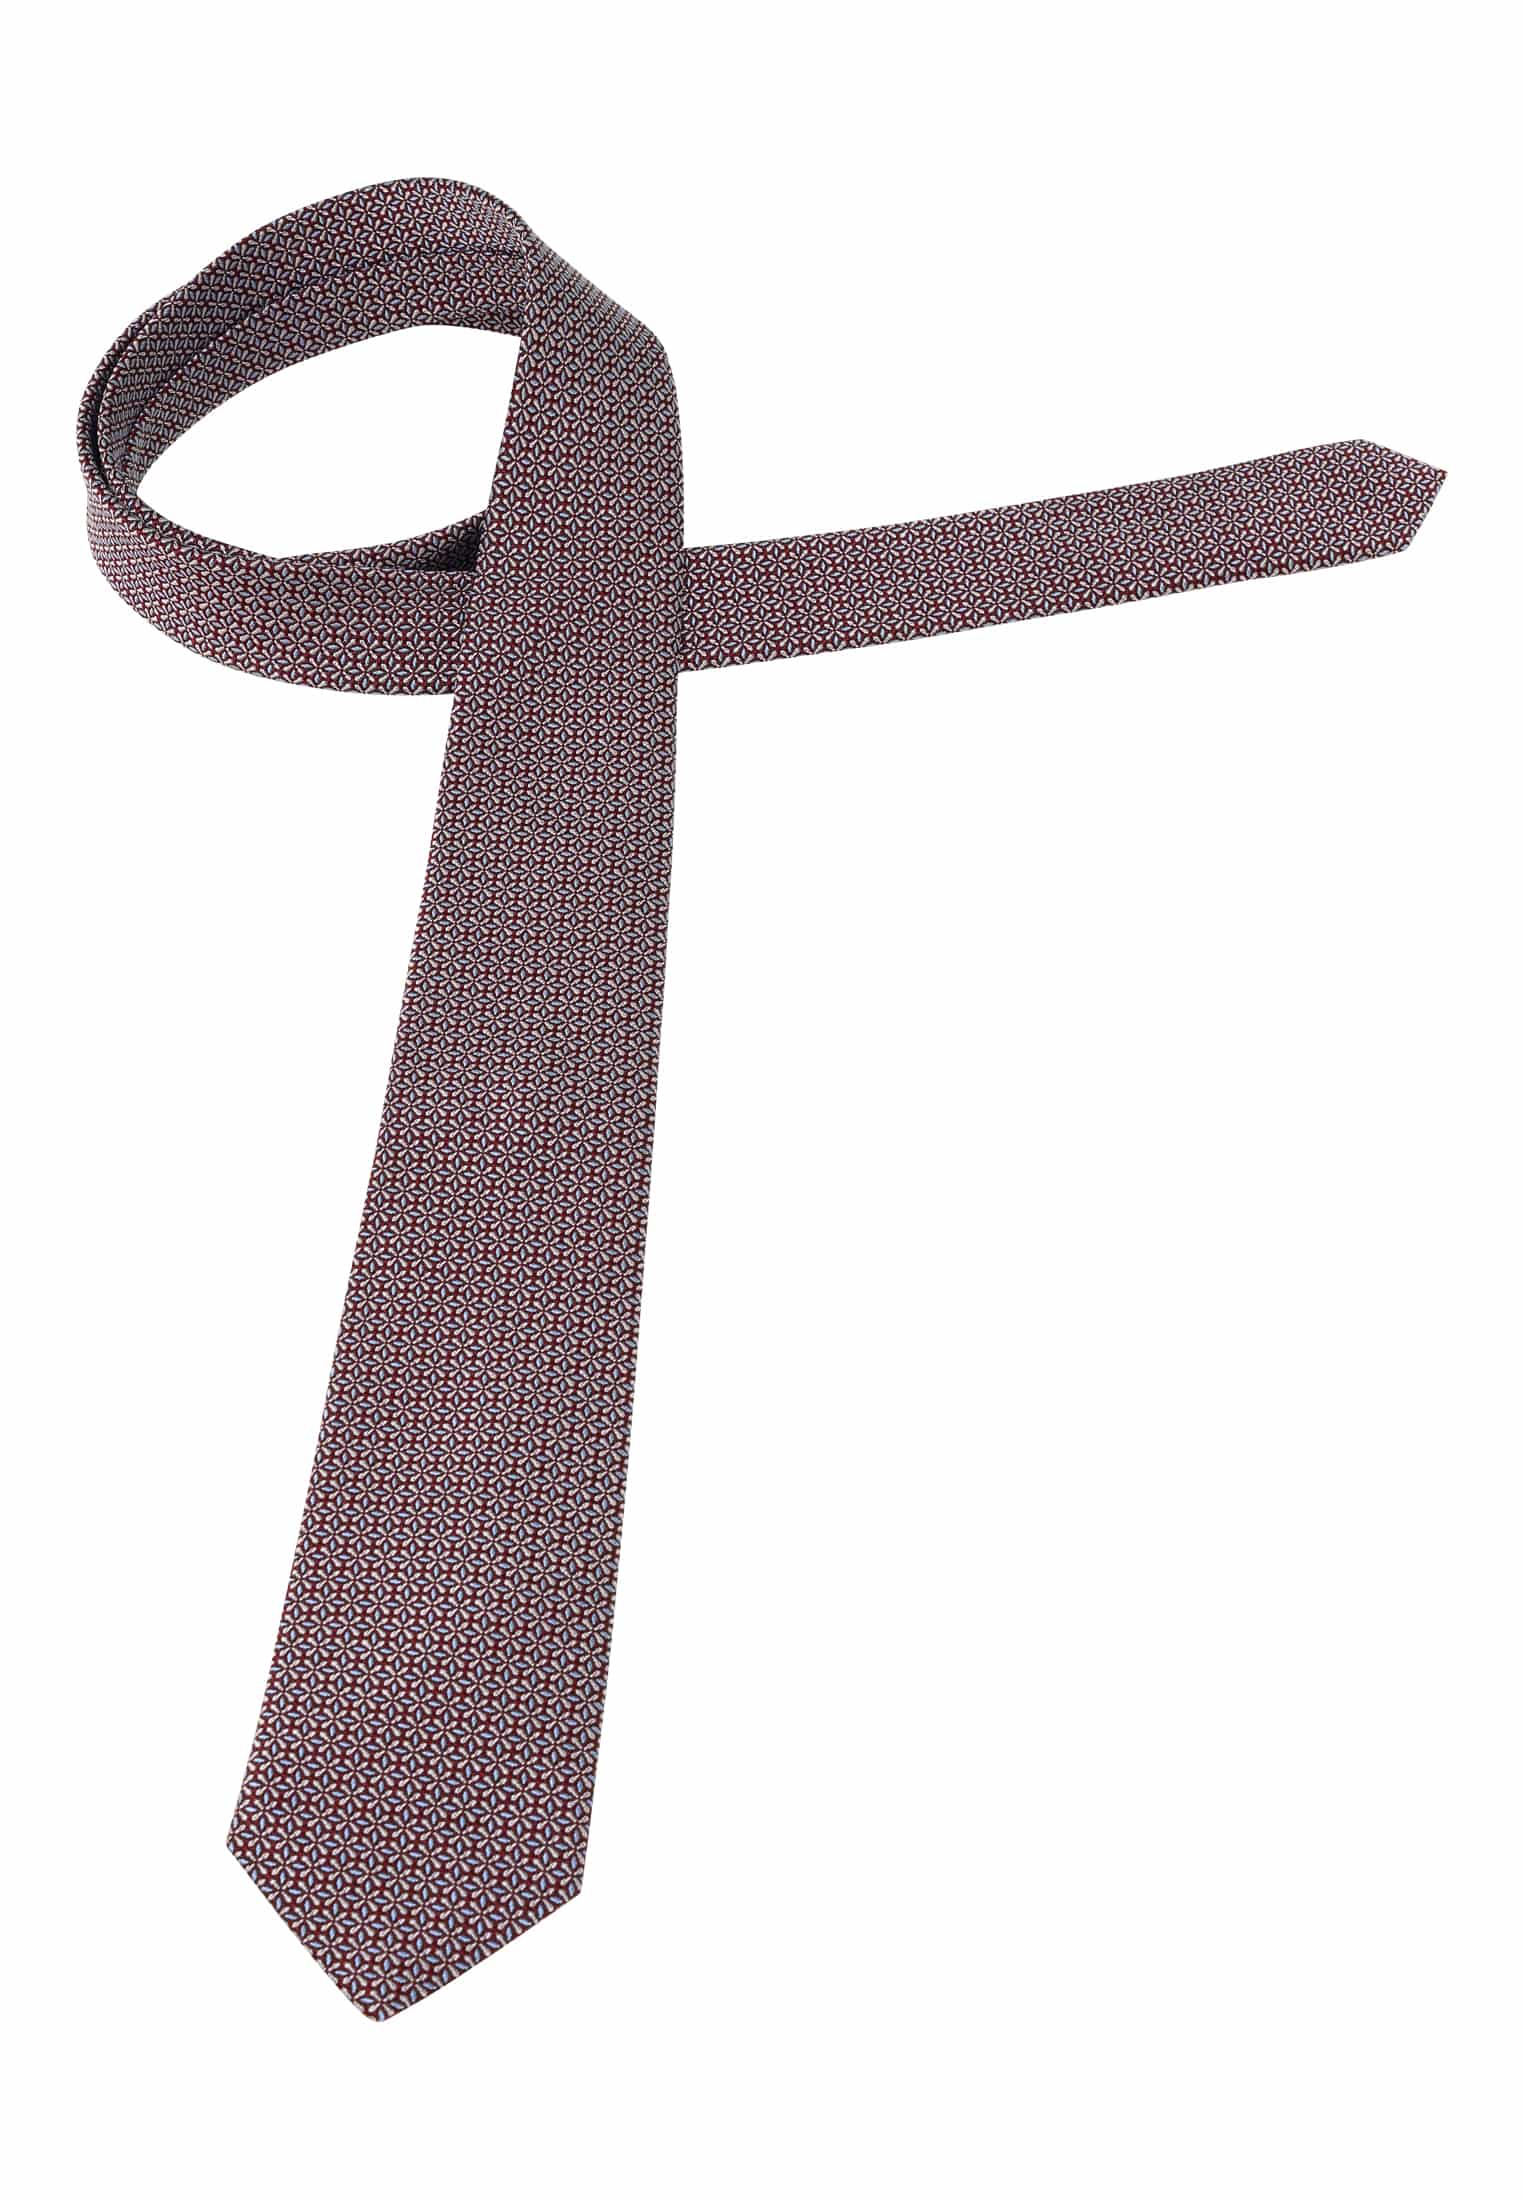 Krawatte in braun strukturiert | braun 1AC02043-02-91-142 | | 142